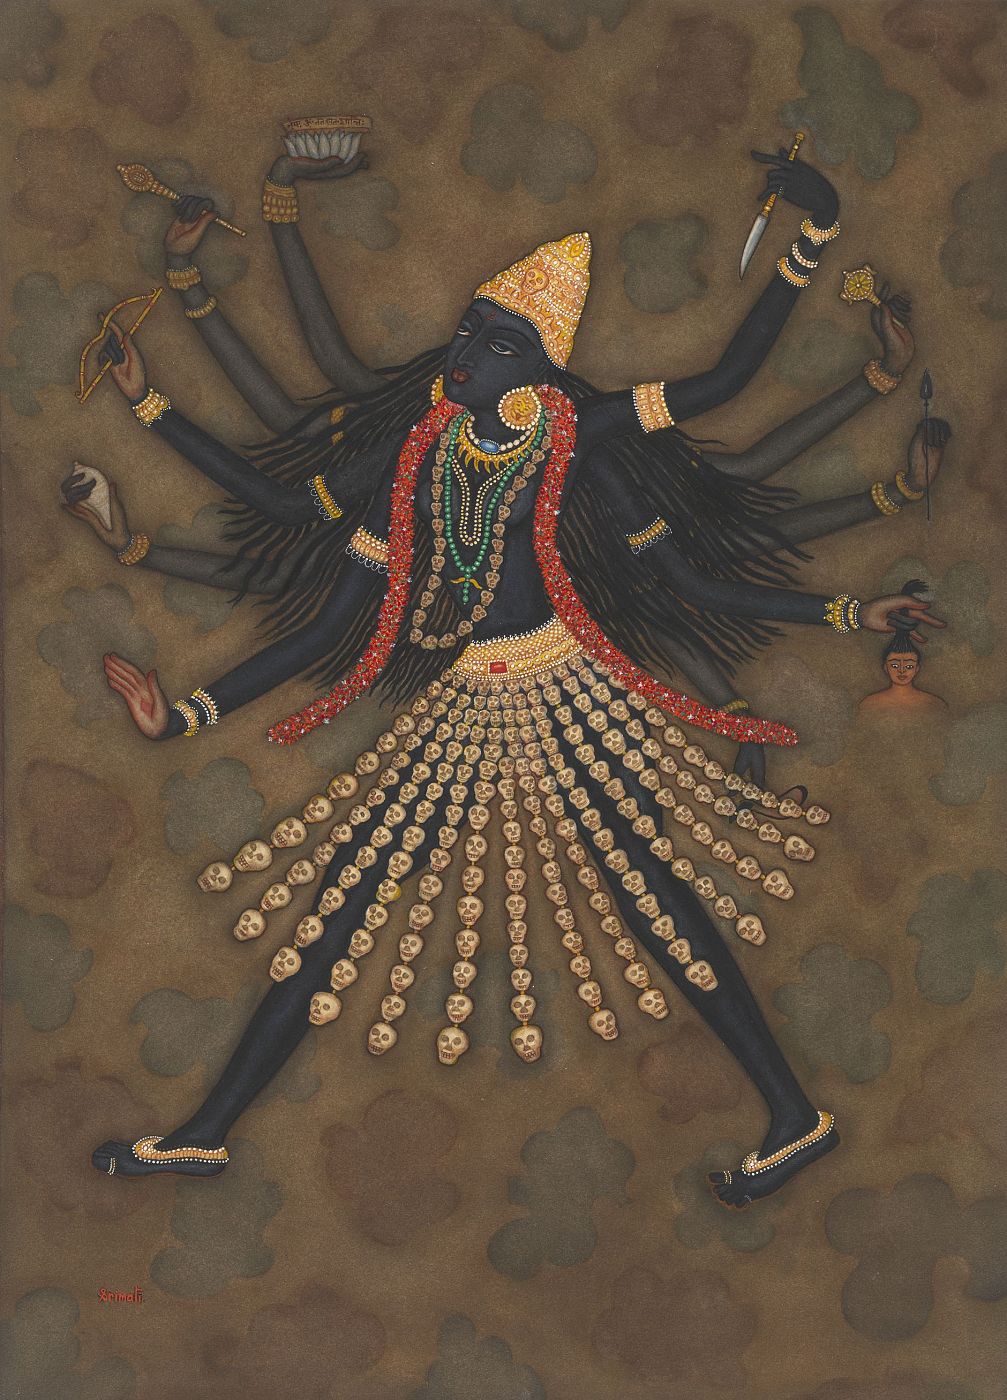 Pintura de Y.G. Srimati titulada 'Kali', 1990, una de las obras incluidas en la exposición del Metropolitan.